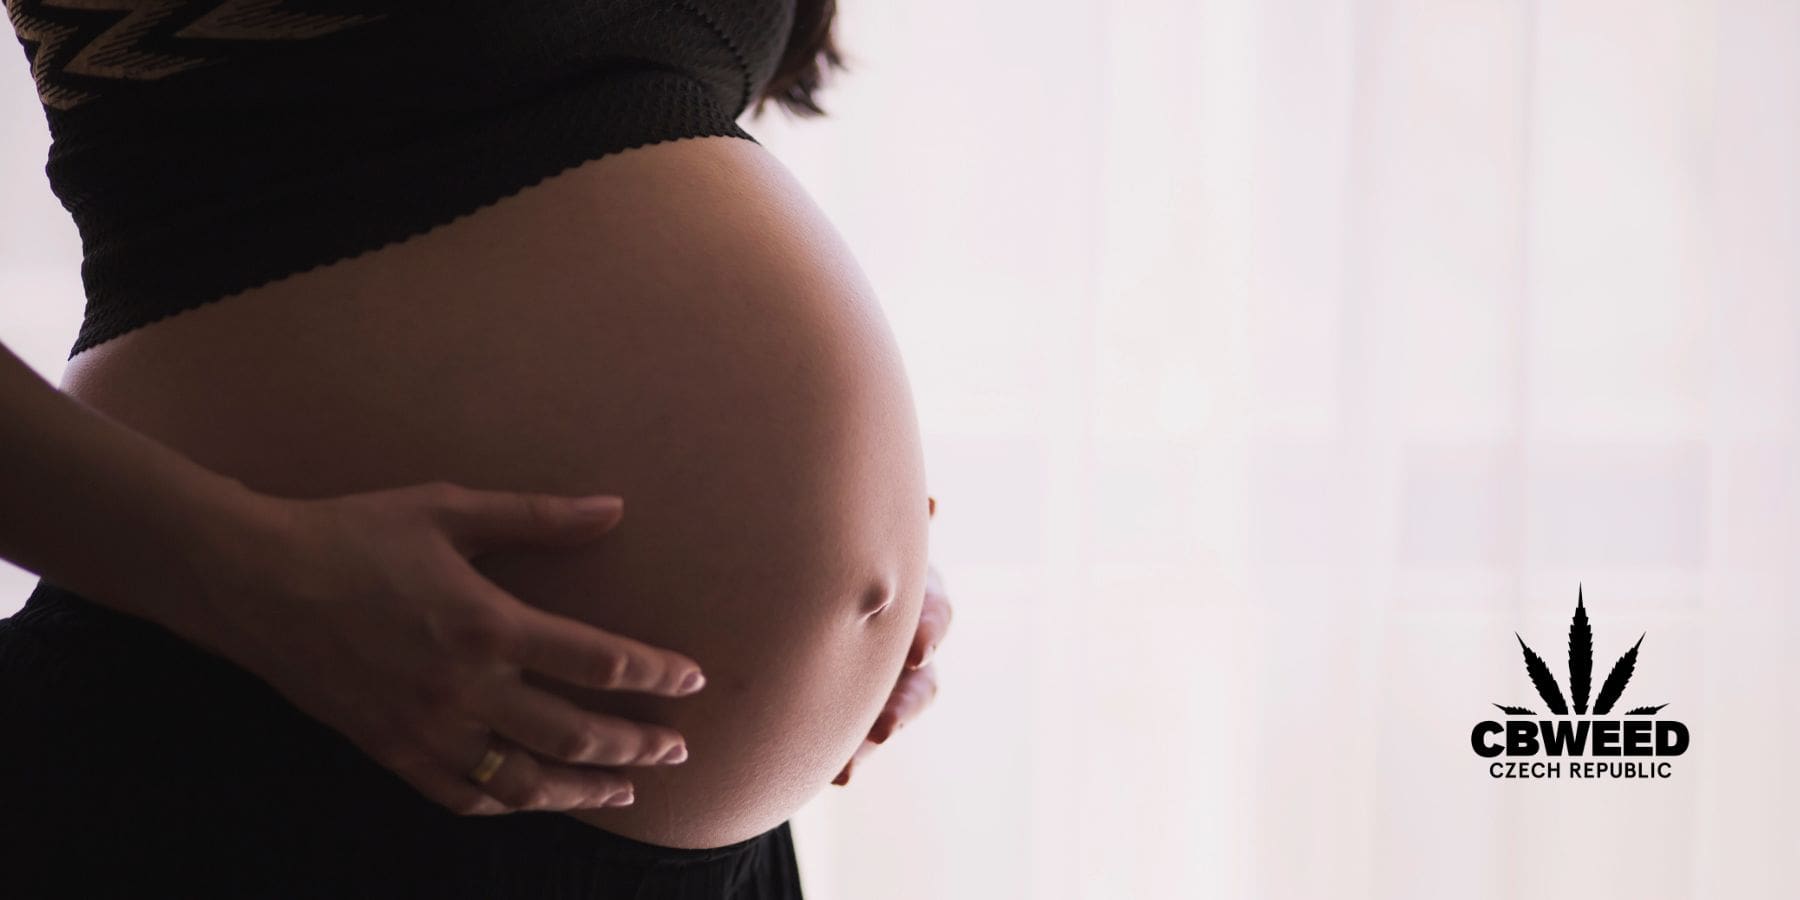 Nebezpečí užívání CBD během těhotenství a kojení